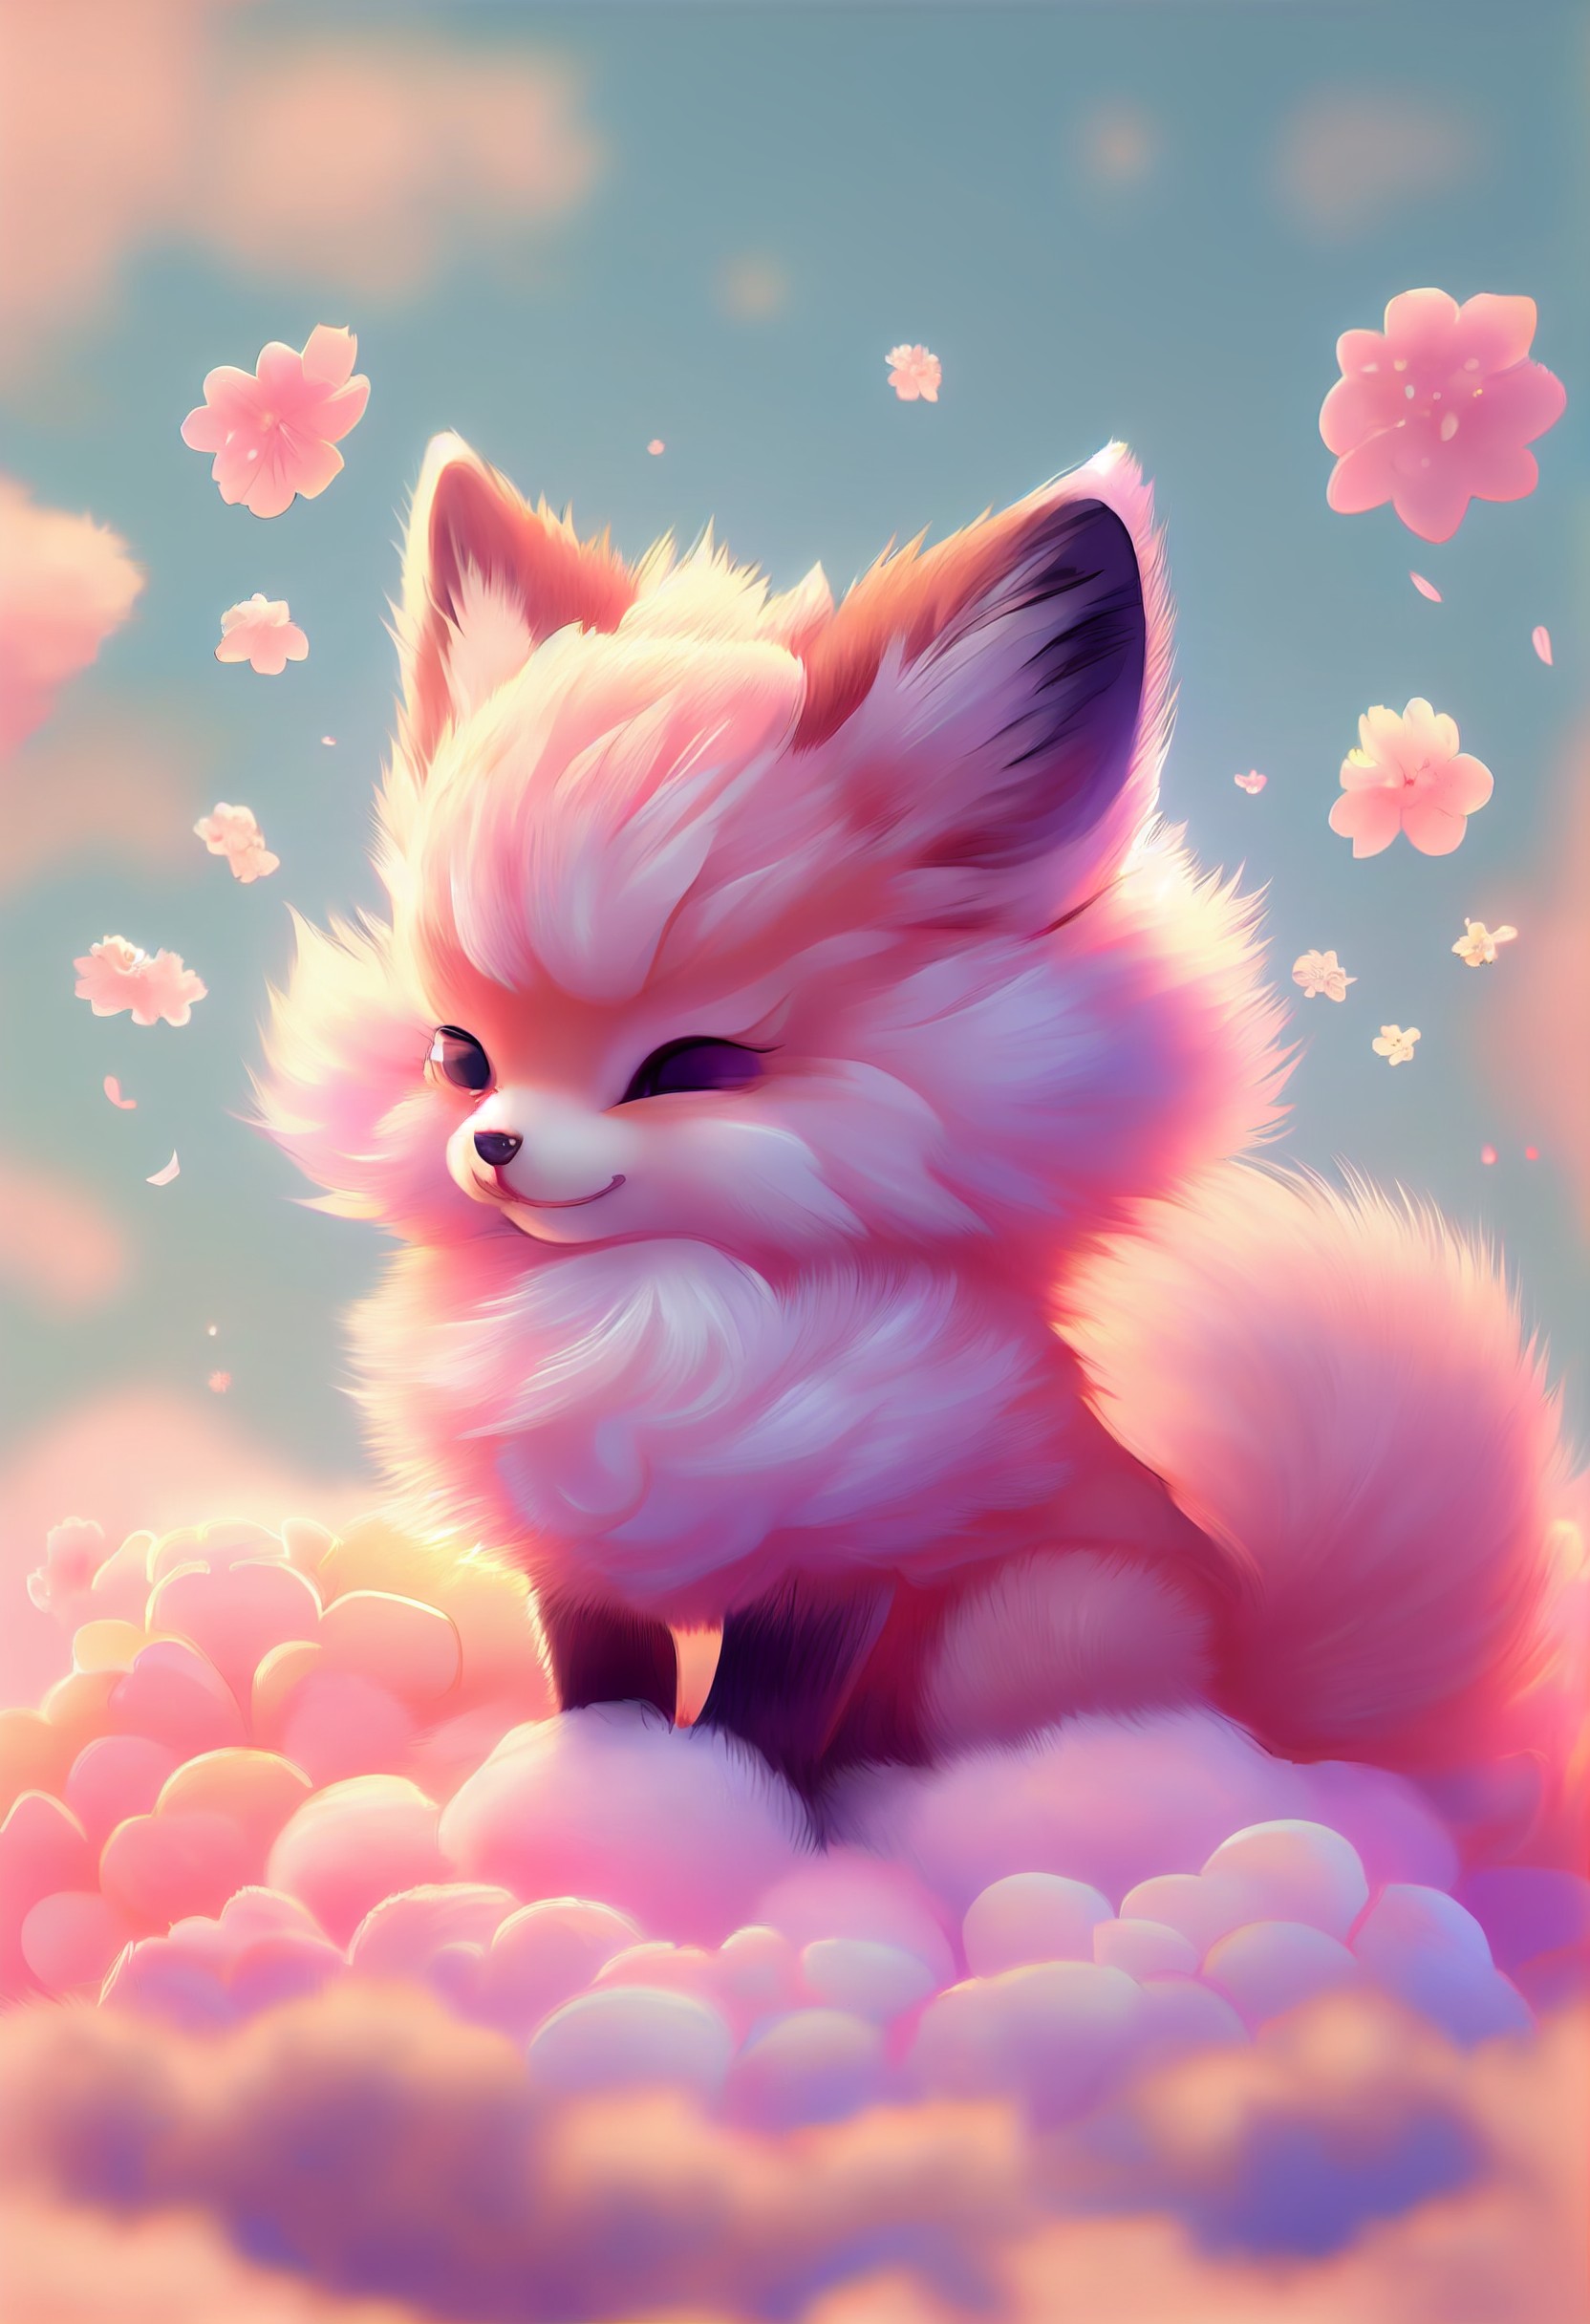 可爱的粉色小狐狸毛茸茸的